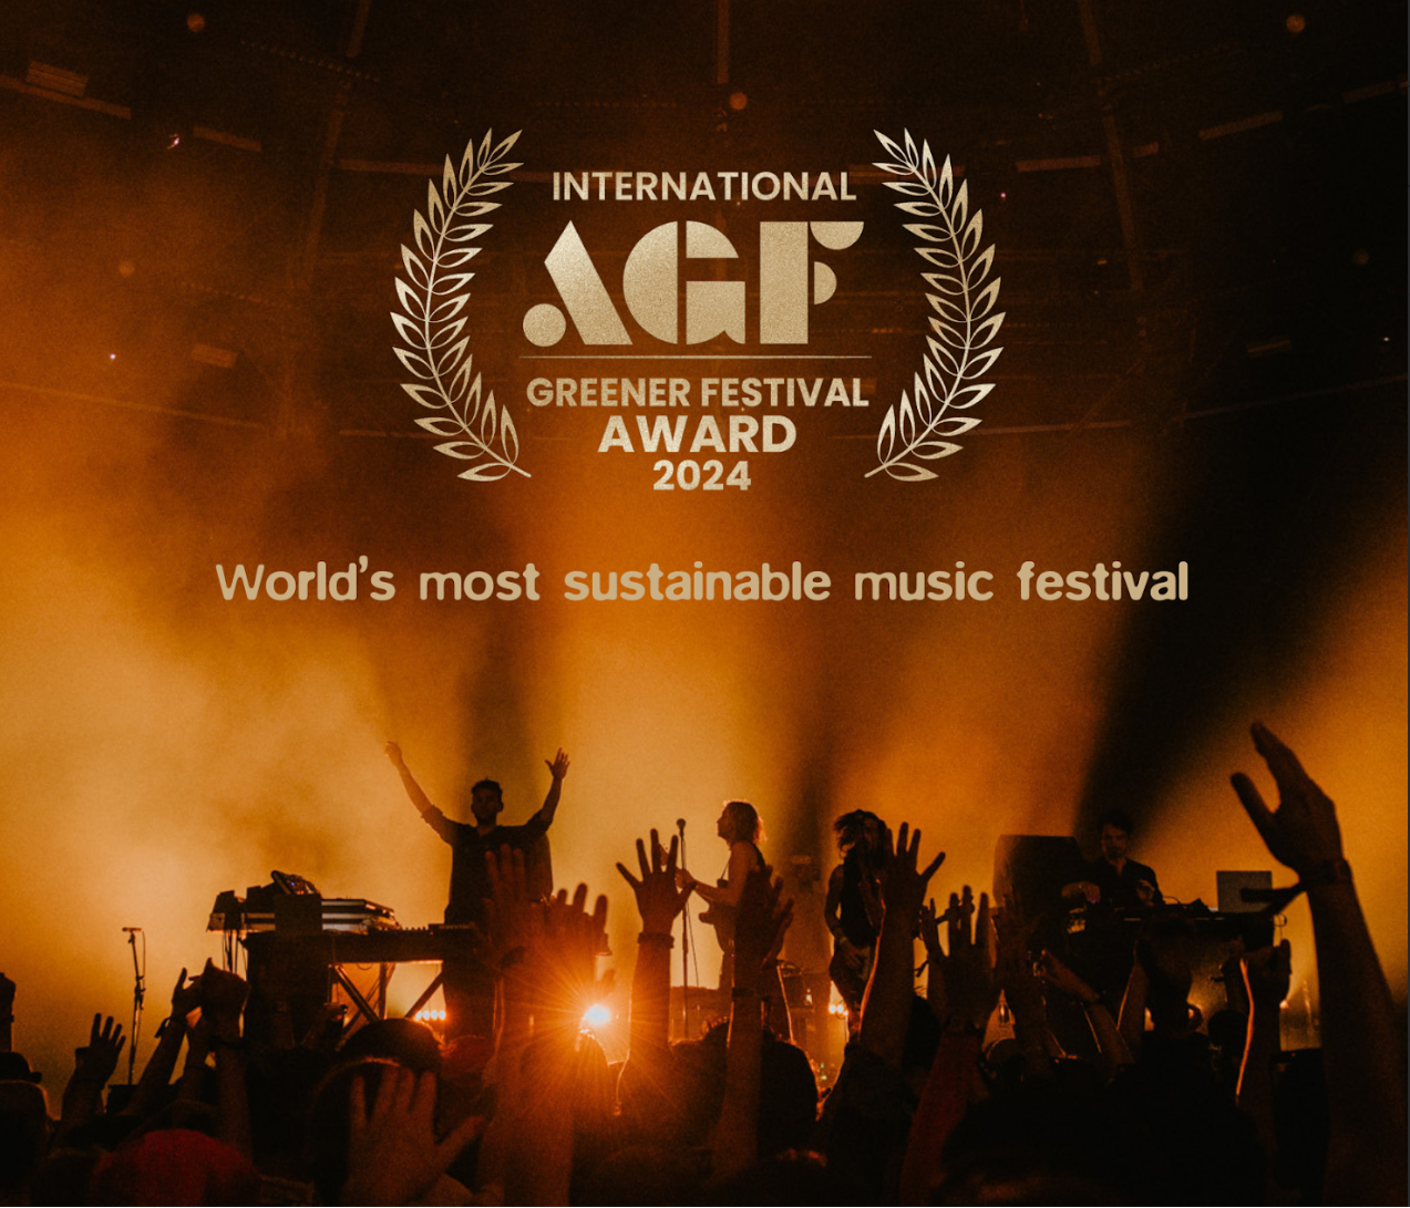 Le Festival Paradise City couronné comme le festival de musique le plus durable au monde lors des International AGF Awards 2024.